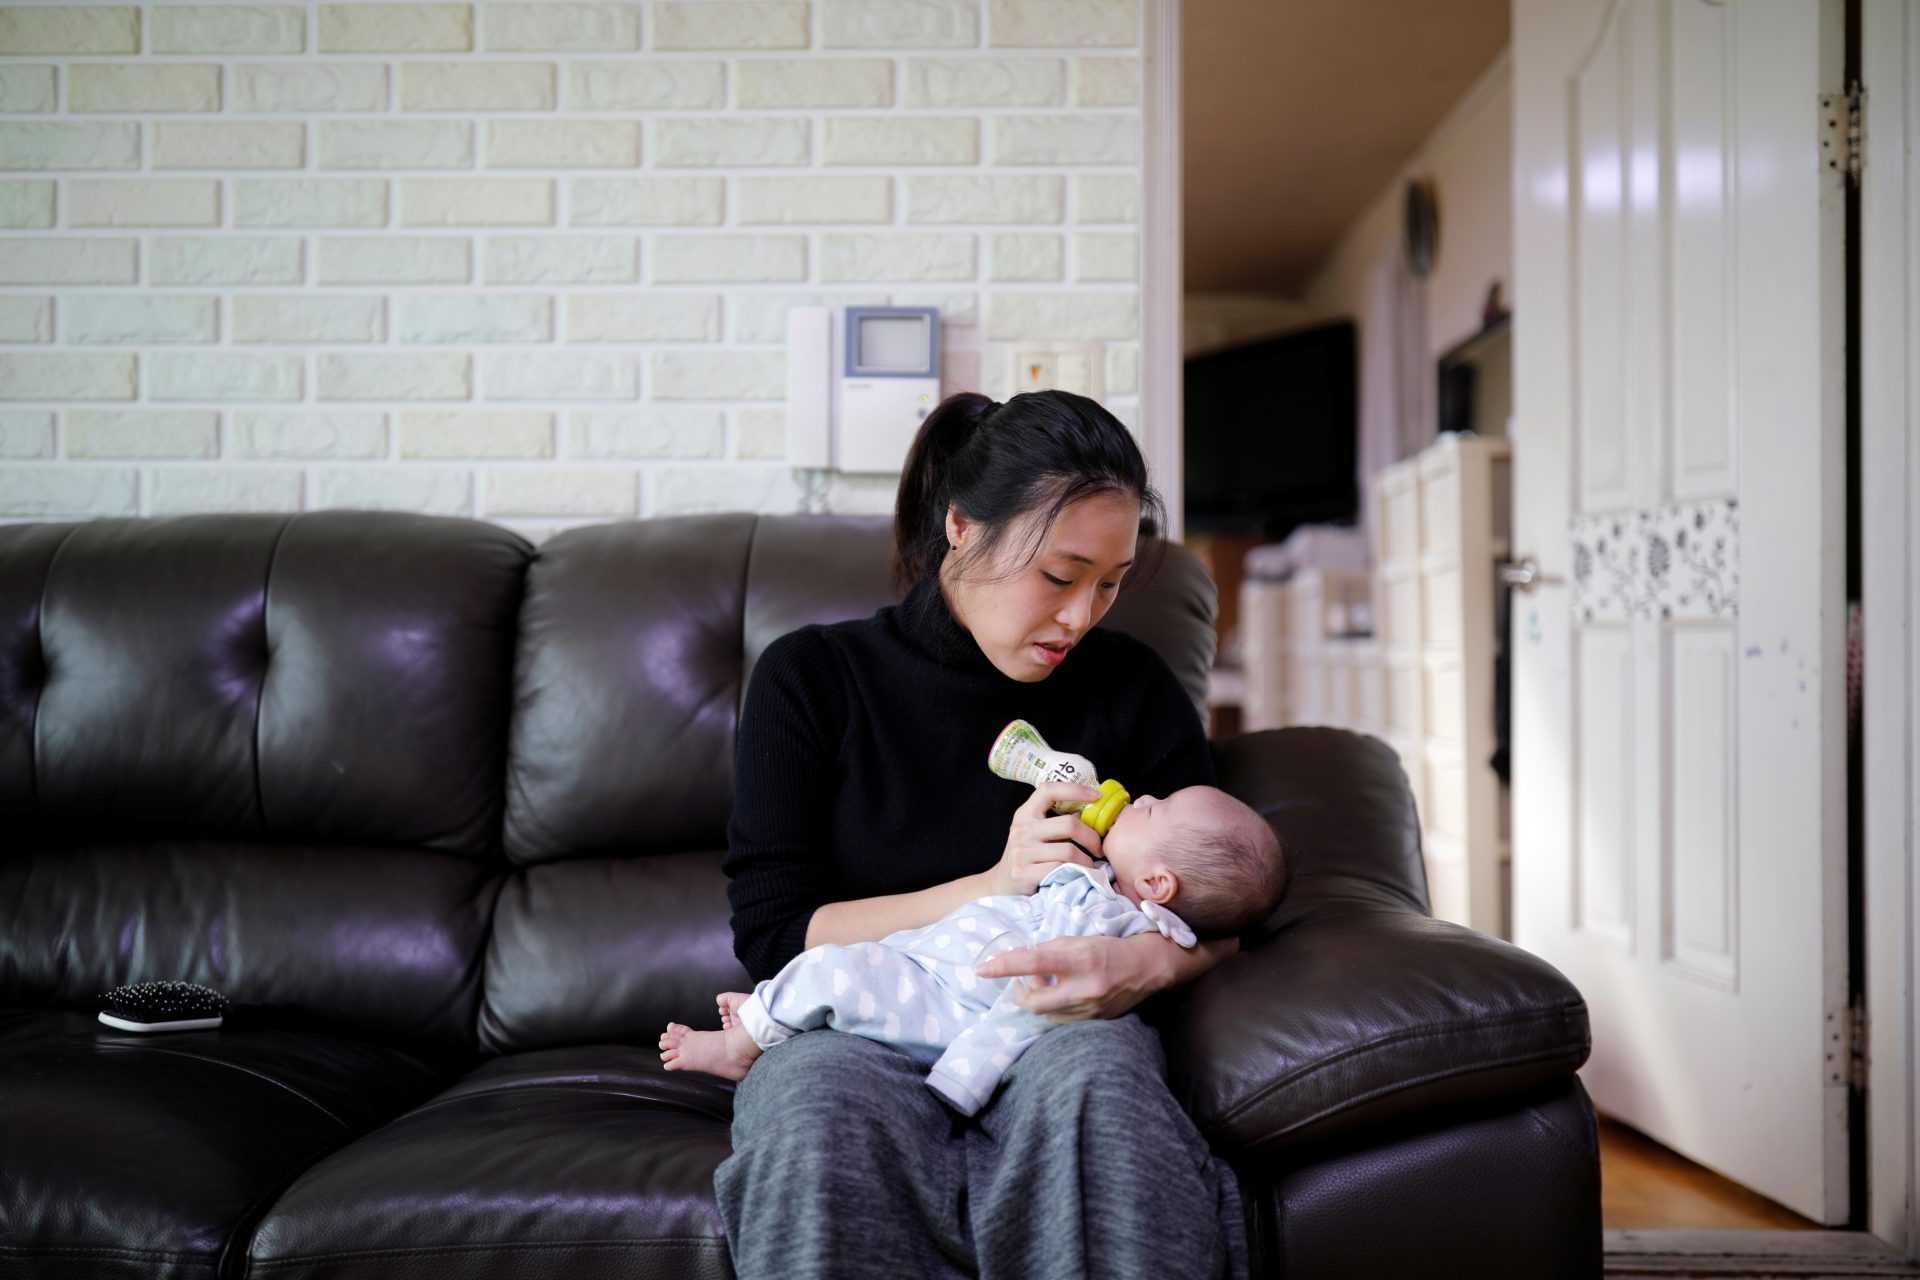 Corée du Sud interroge Chine : La baisse de natalité en Asie de l'Est